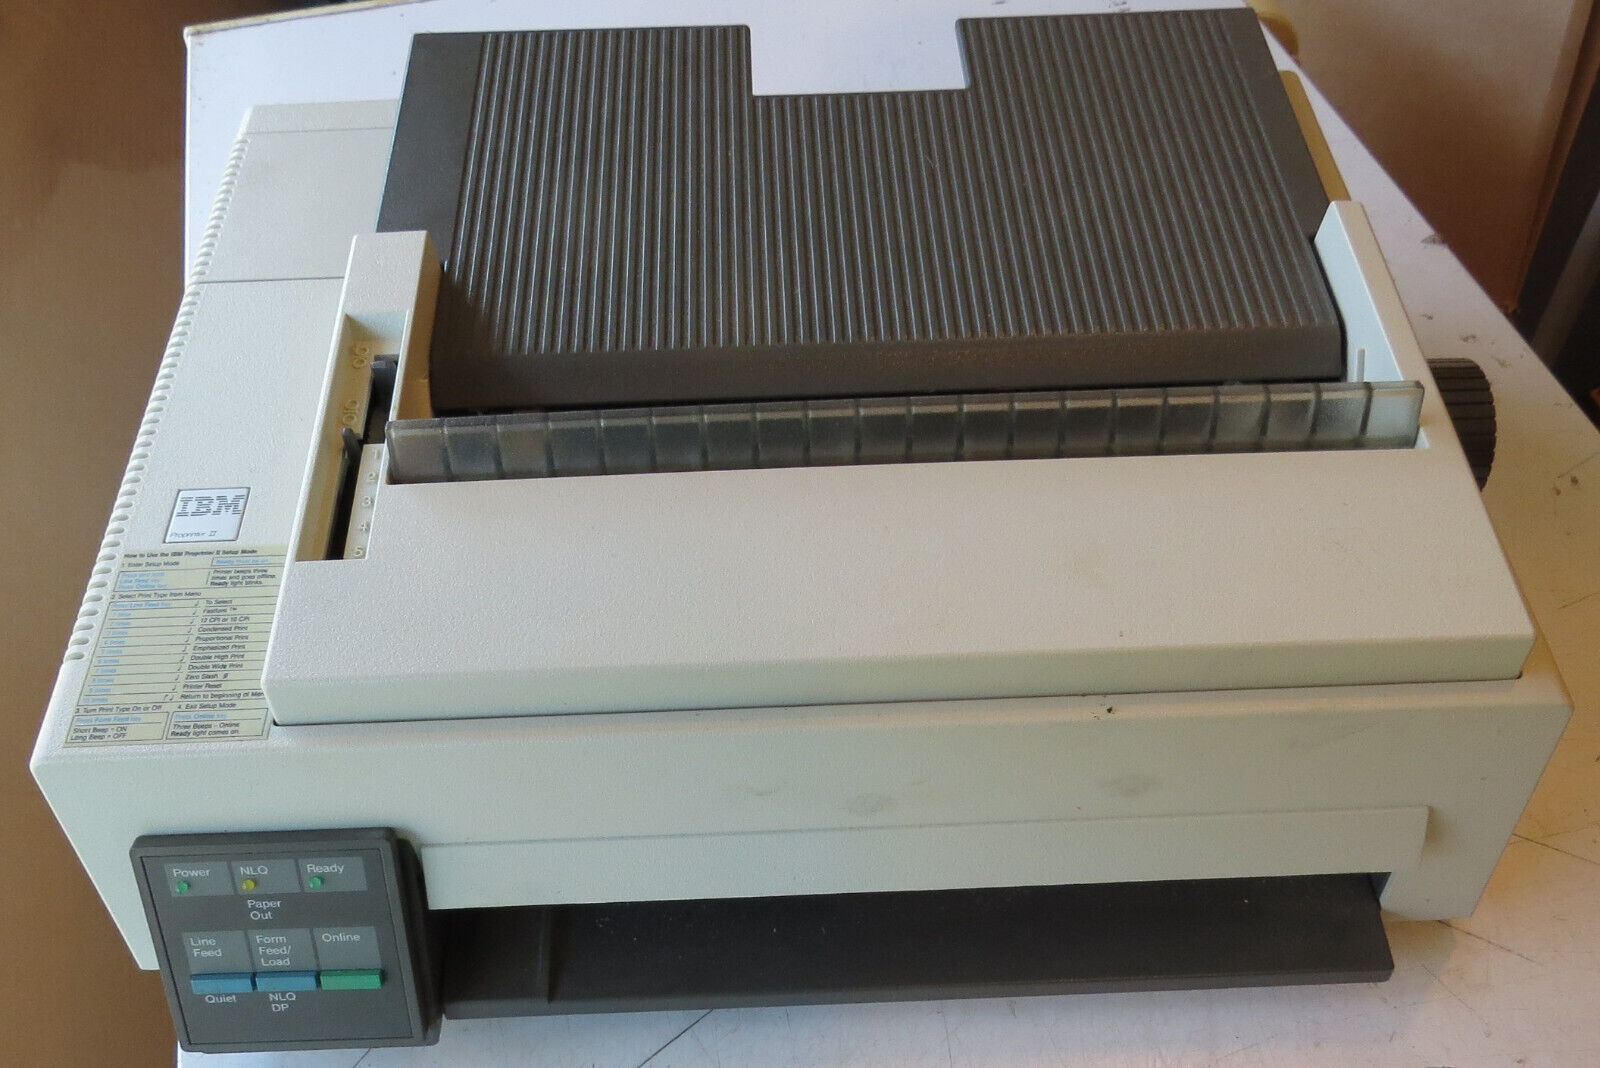 IBM ProPrinter II Dot Matrix Printer P/N 4201-001 1985 w/ Manual, Parts/Repair